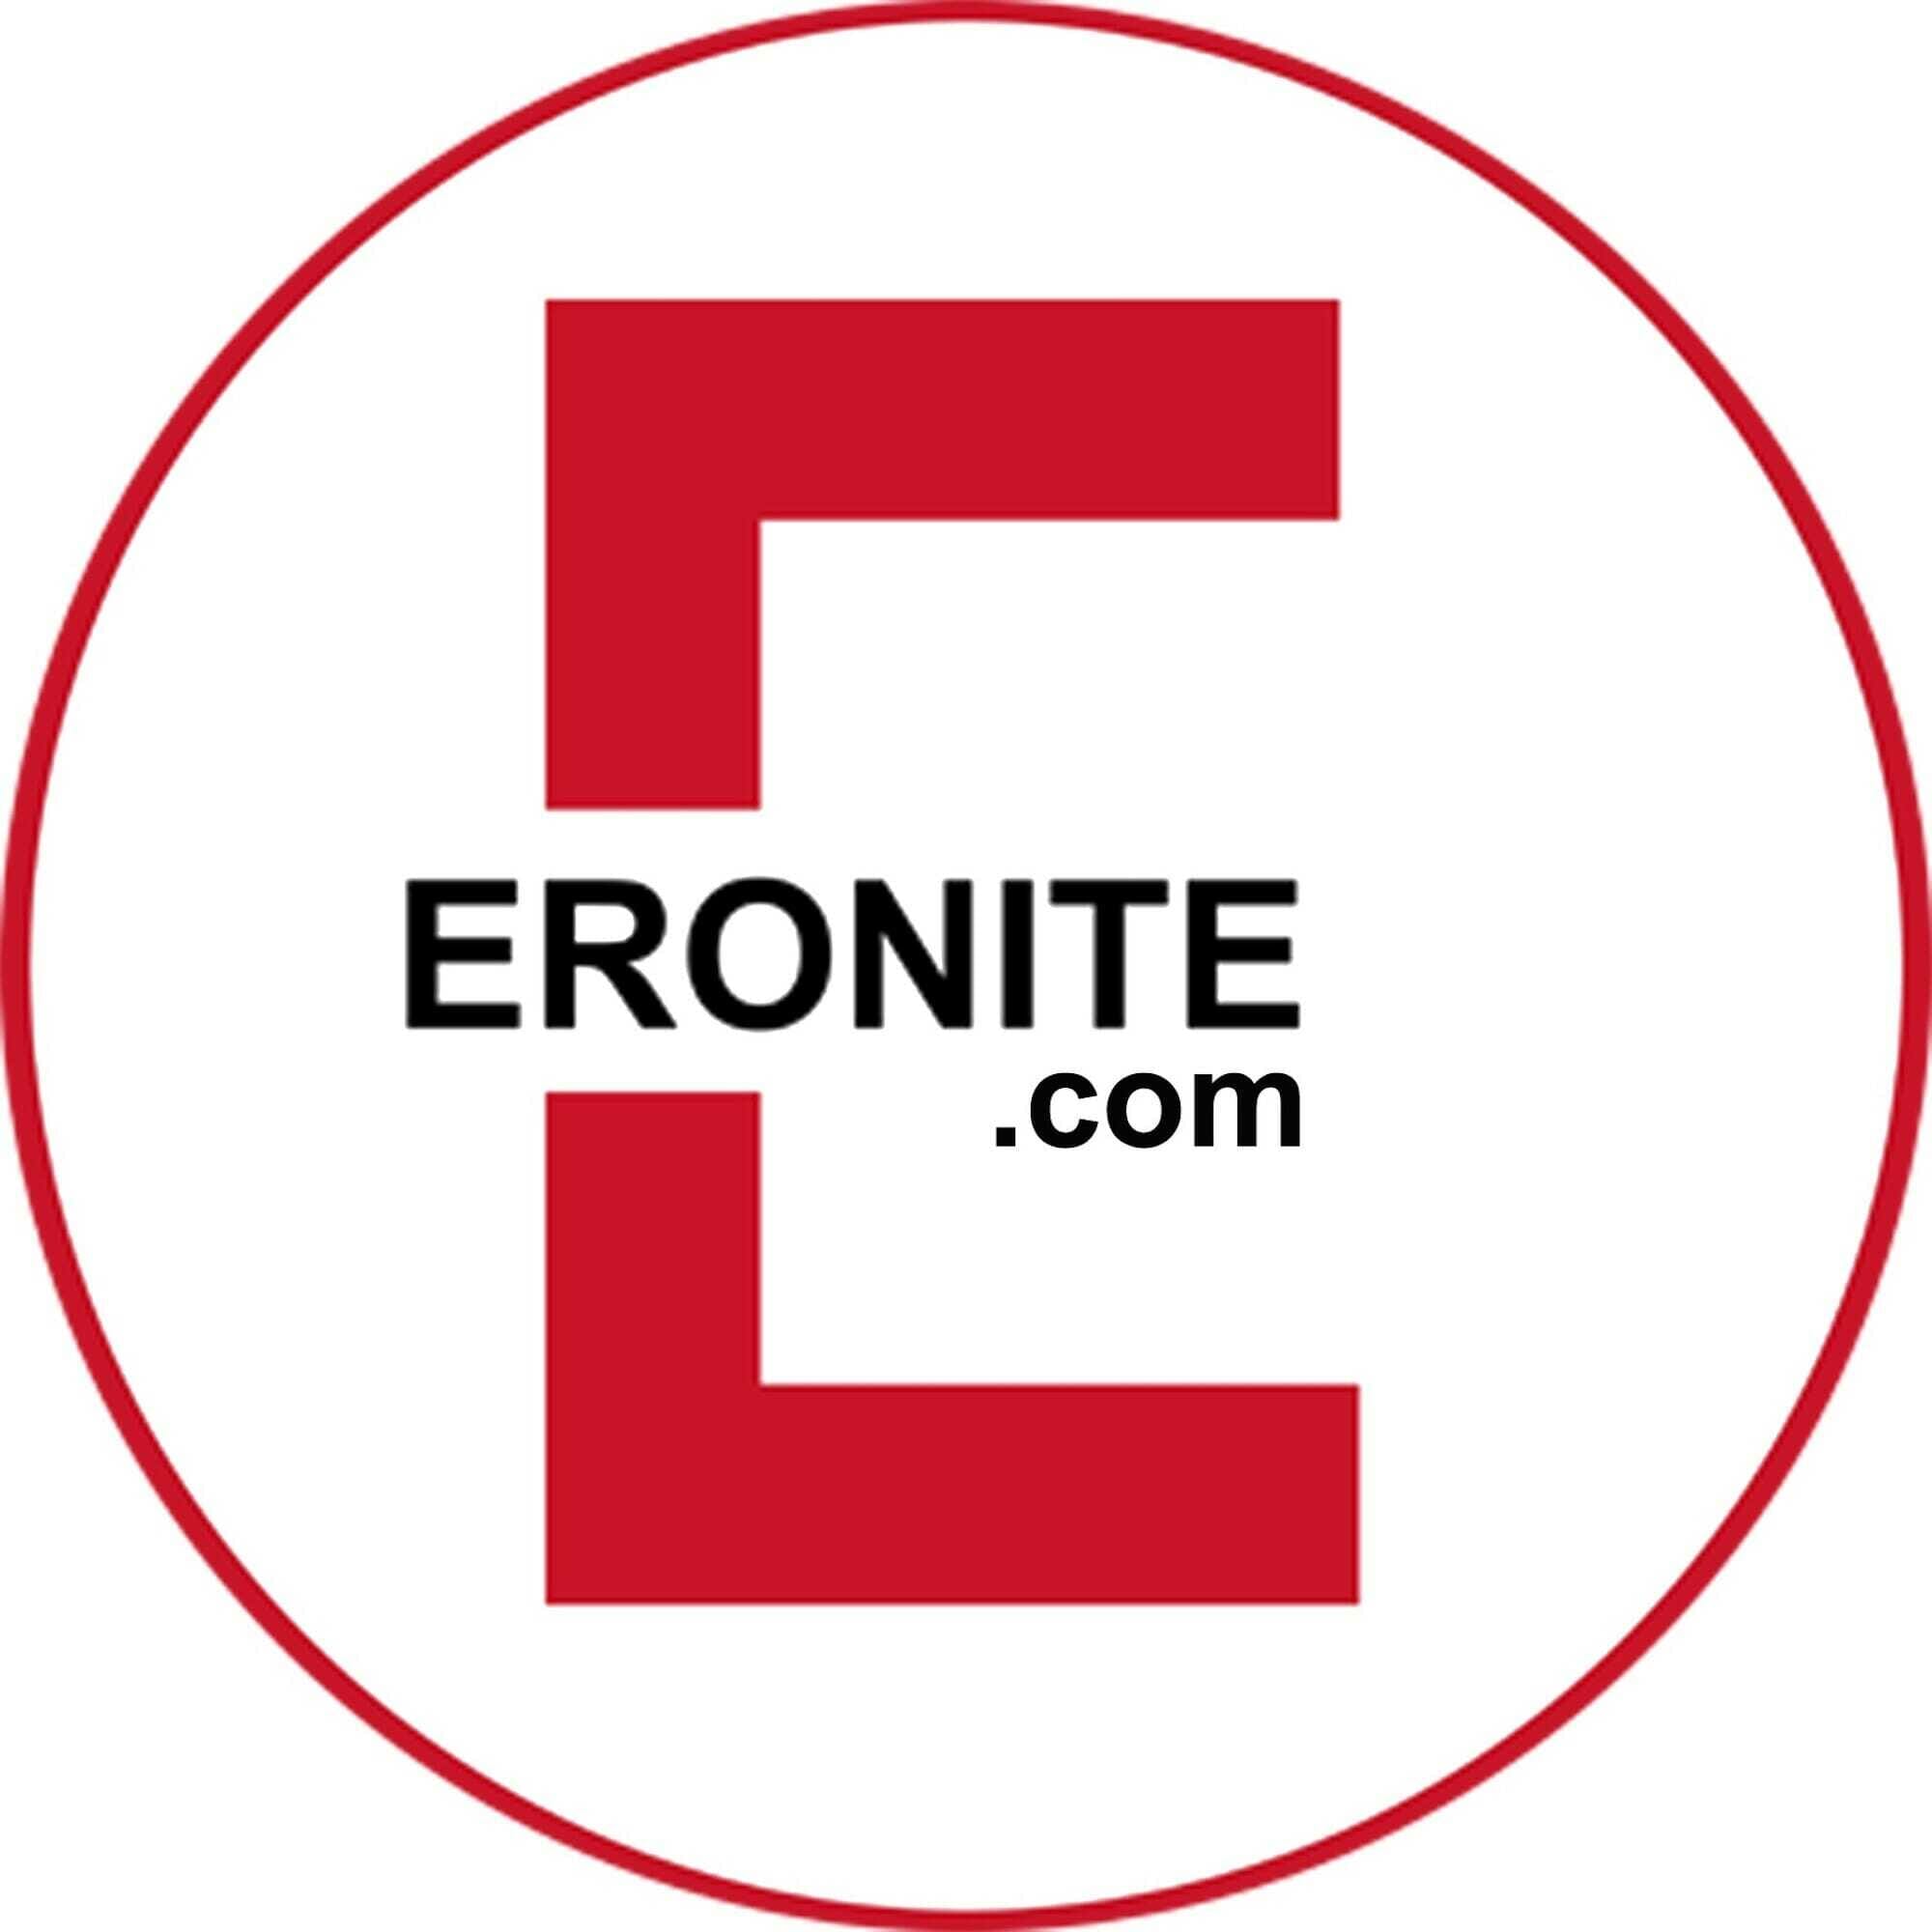 Eronite wird persönlicher Wir stellen unsere Redakteure vor Erotikblog